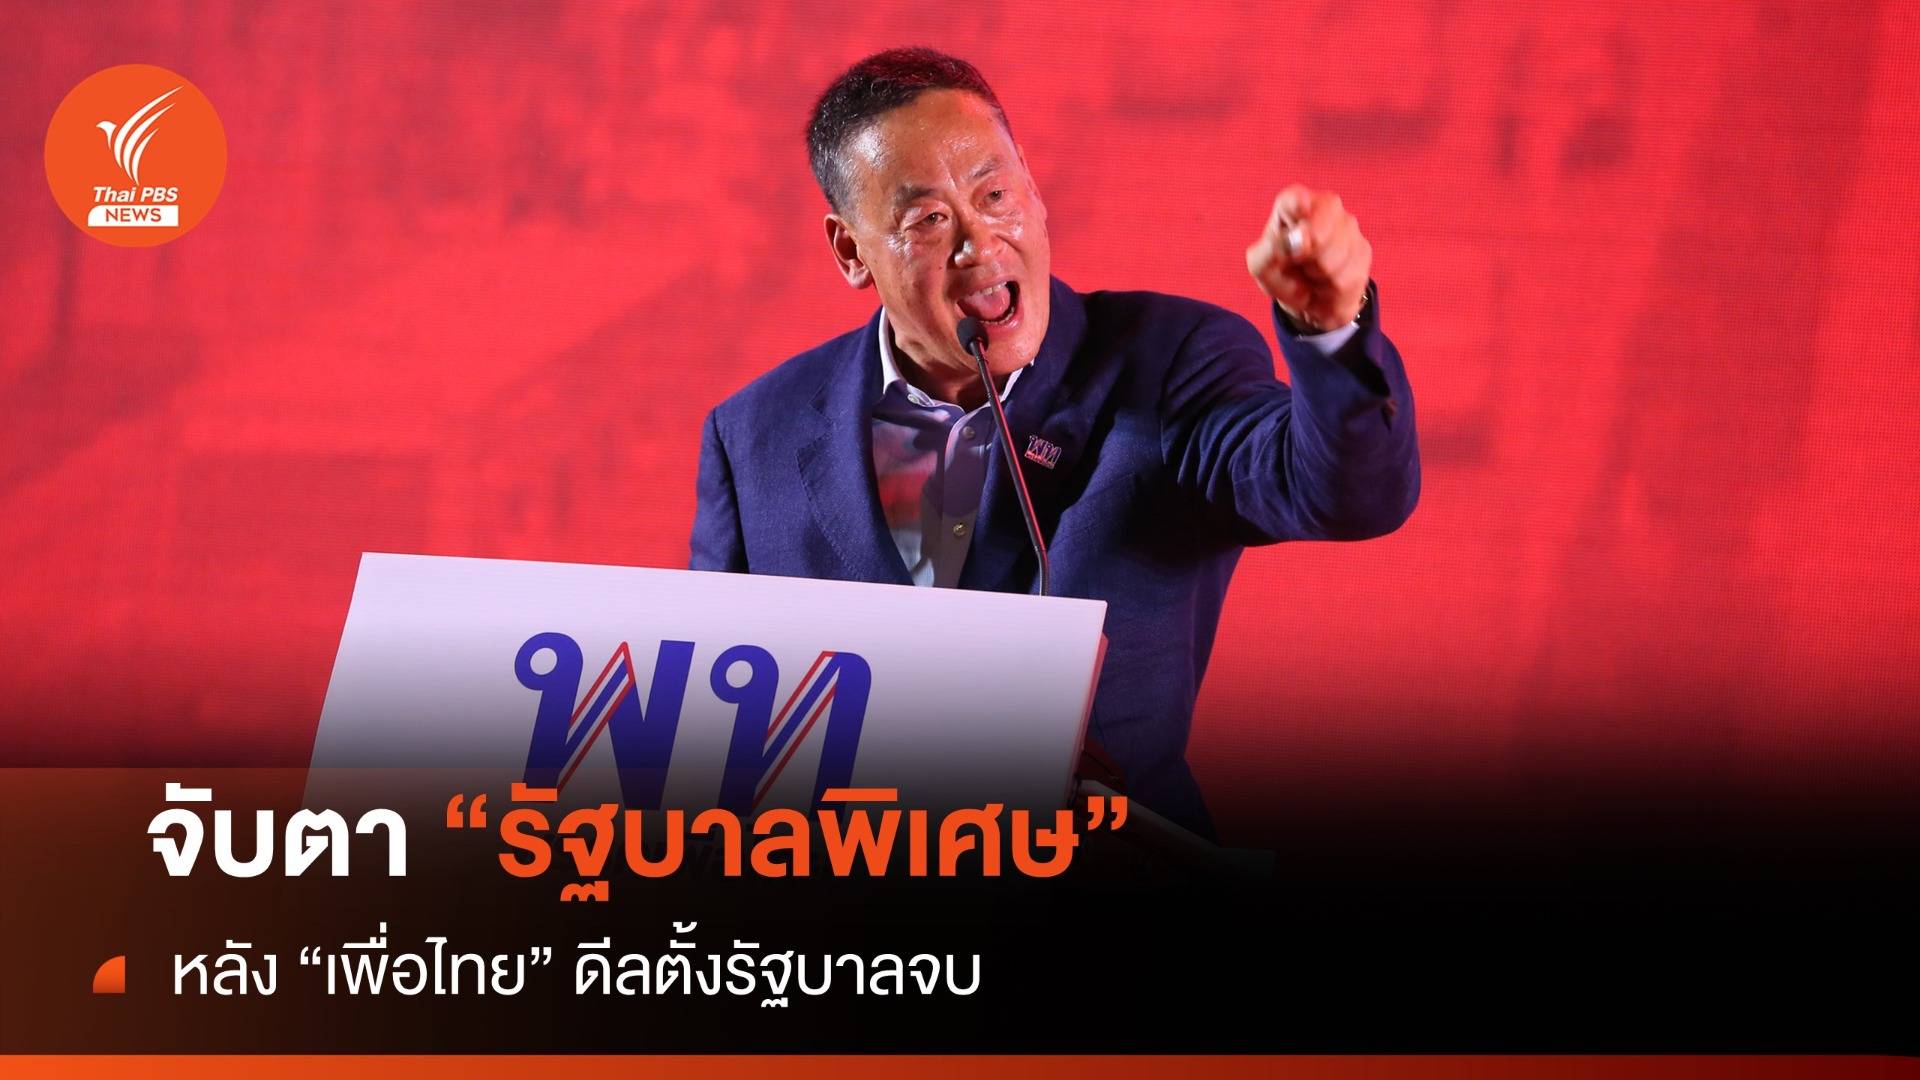 เพื่อไทยดีลตั้งรัฐบาลจบ? “รัฐบาลพิเศษ” 